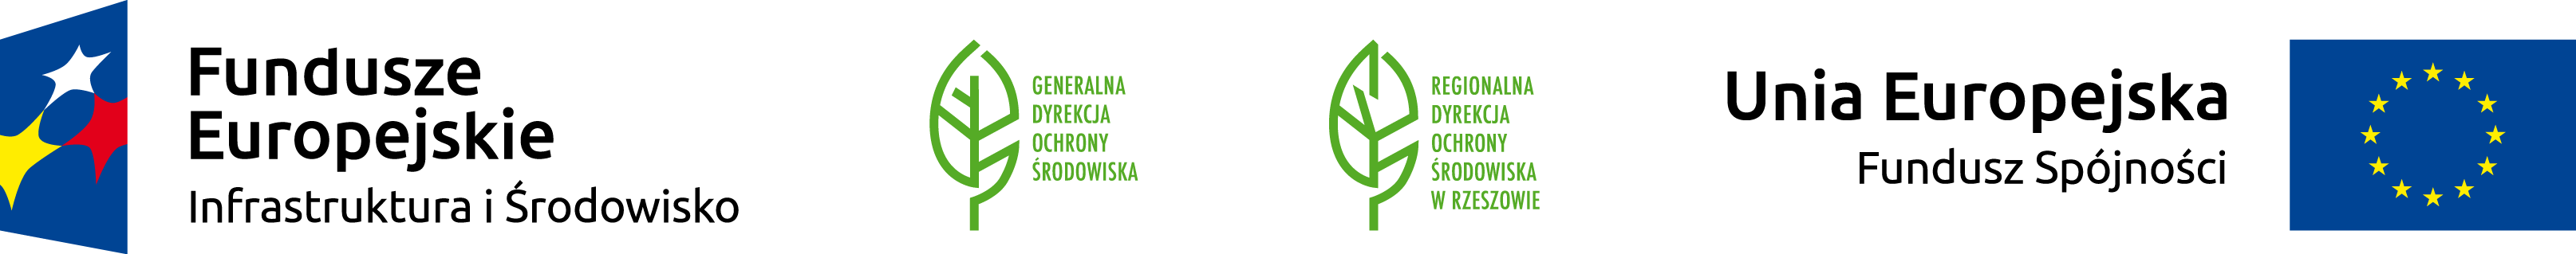 Logotypu Fundusze Europejskie Infrastruktura i Środowisko, Generalna Dyrekcja Ochrony Środowiska, Regionalna Dyrekcja Ochrony Środowiska, Unia Europejska Fundusz Spójności